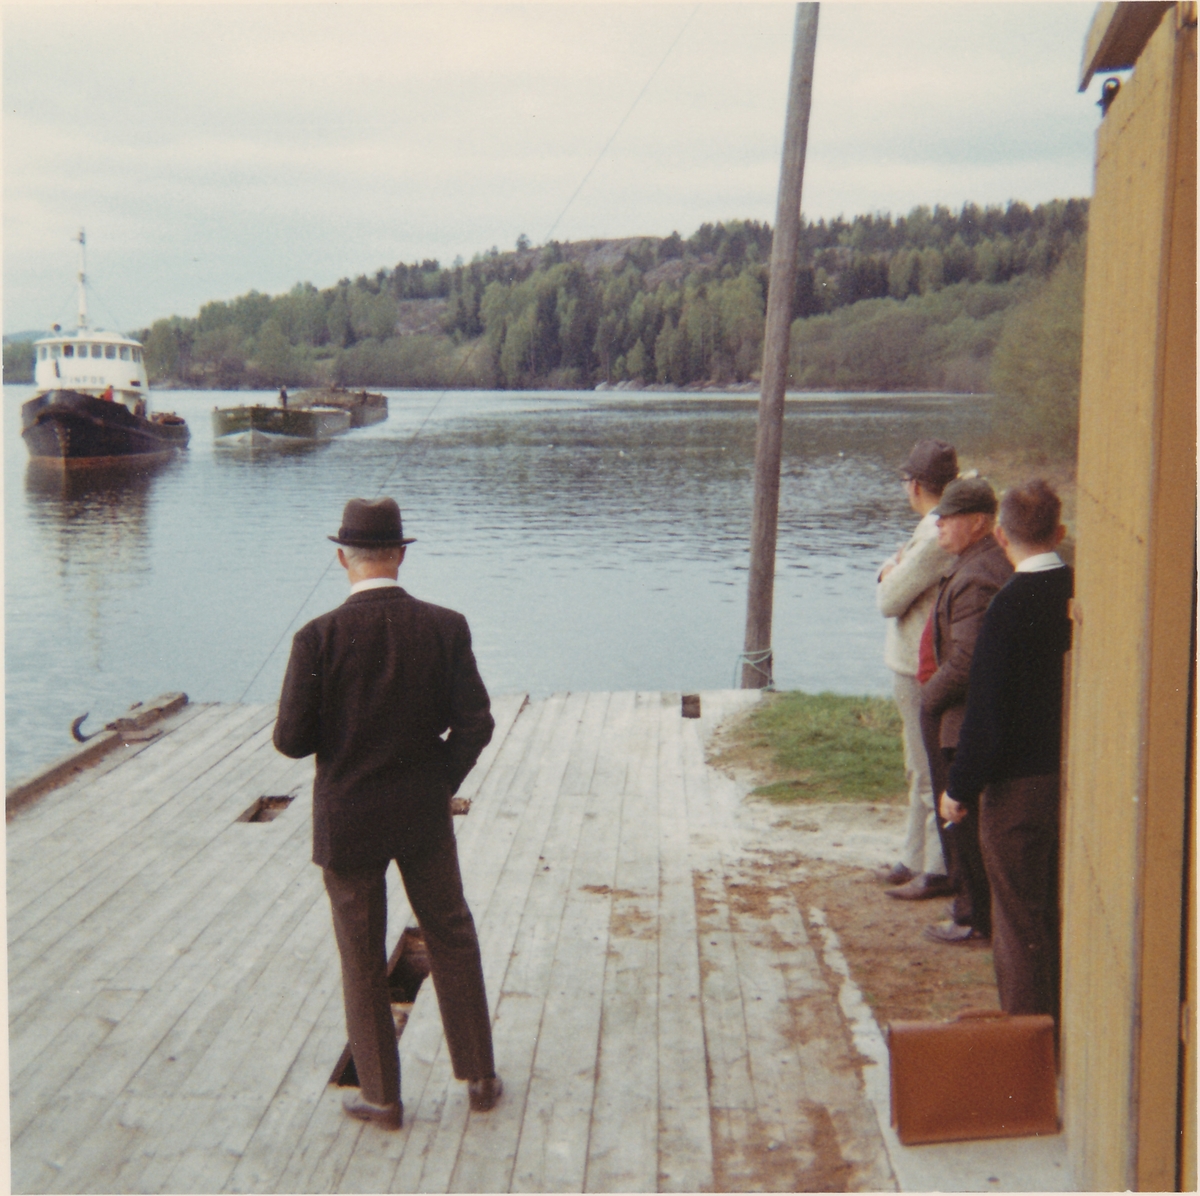 Slepeforsøk ved Akkerhaugen mai 1969. Mennesker på brygge.